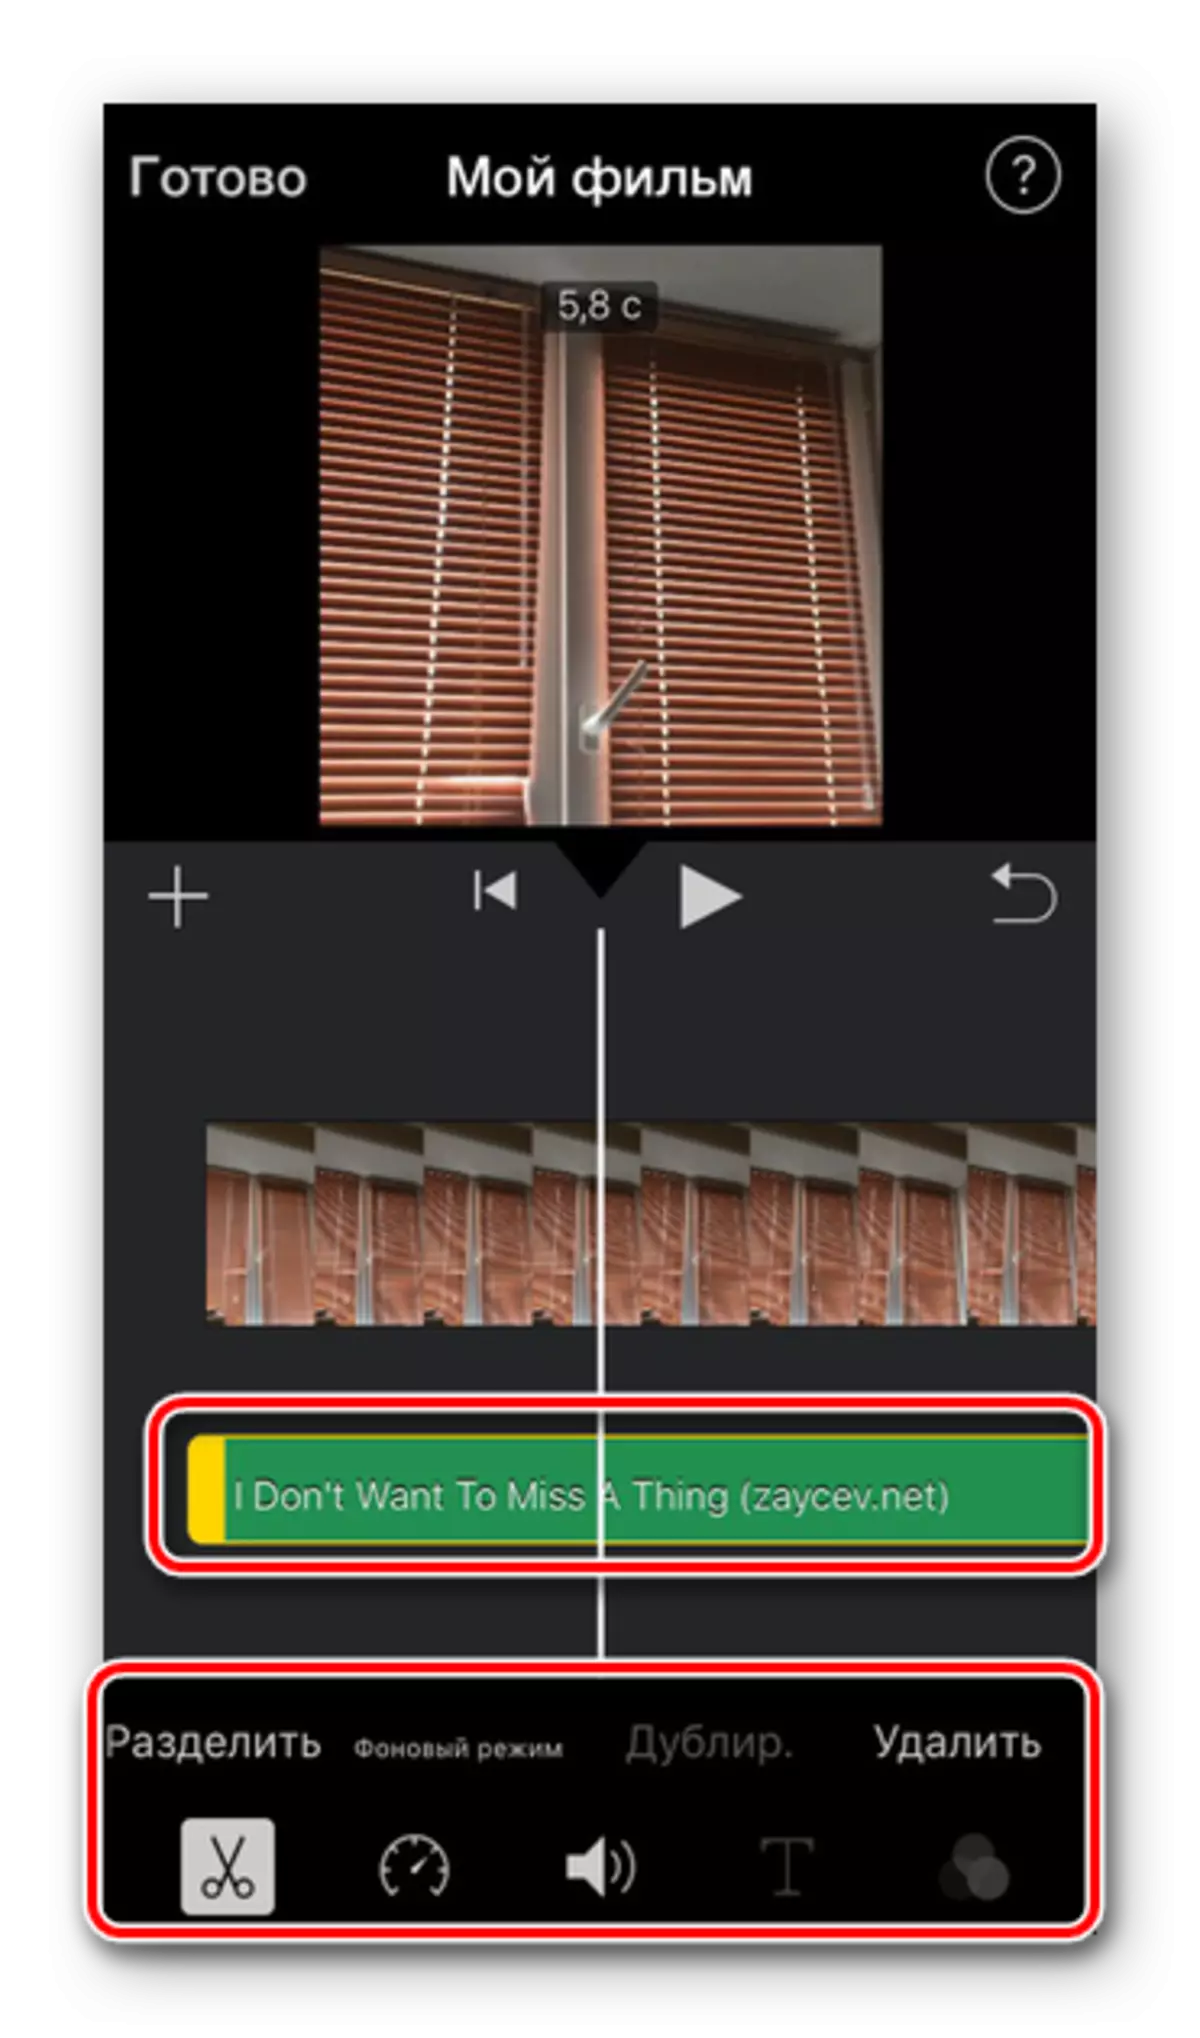 Audio Track and Editing Tools sa Imovie Application sa iPhone